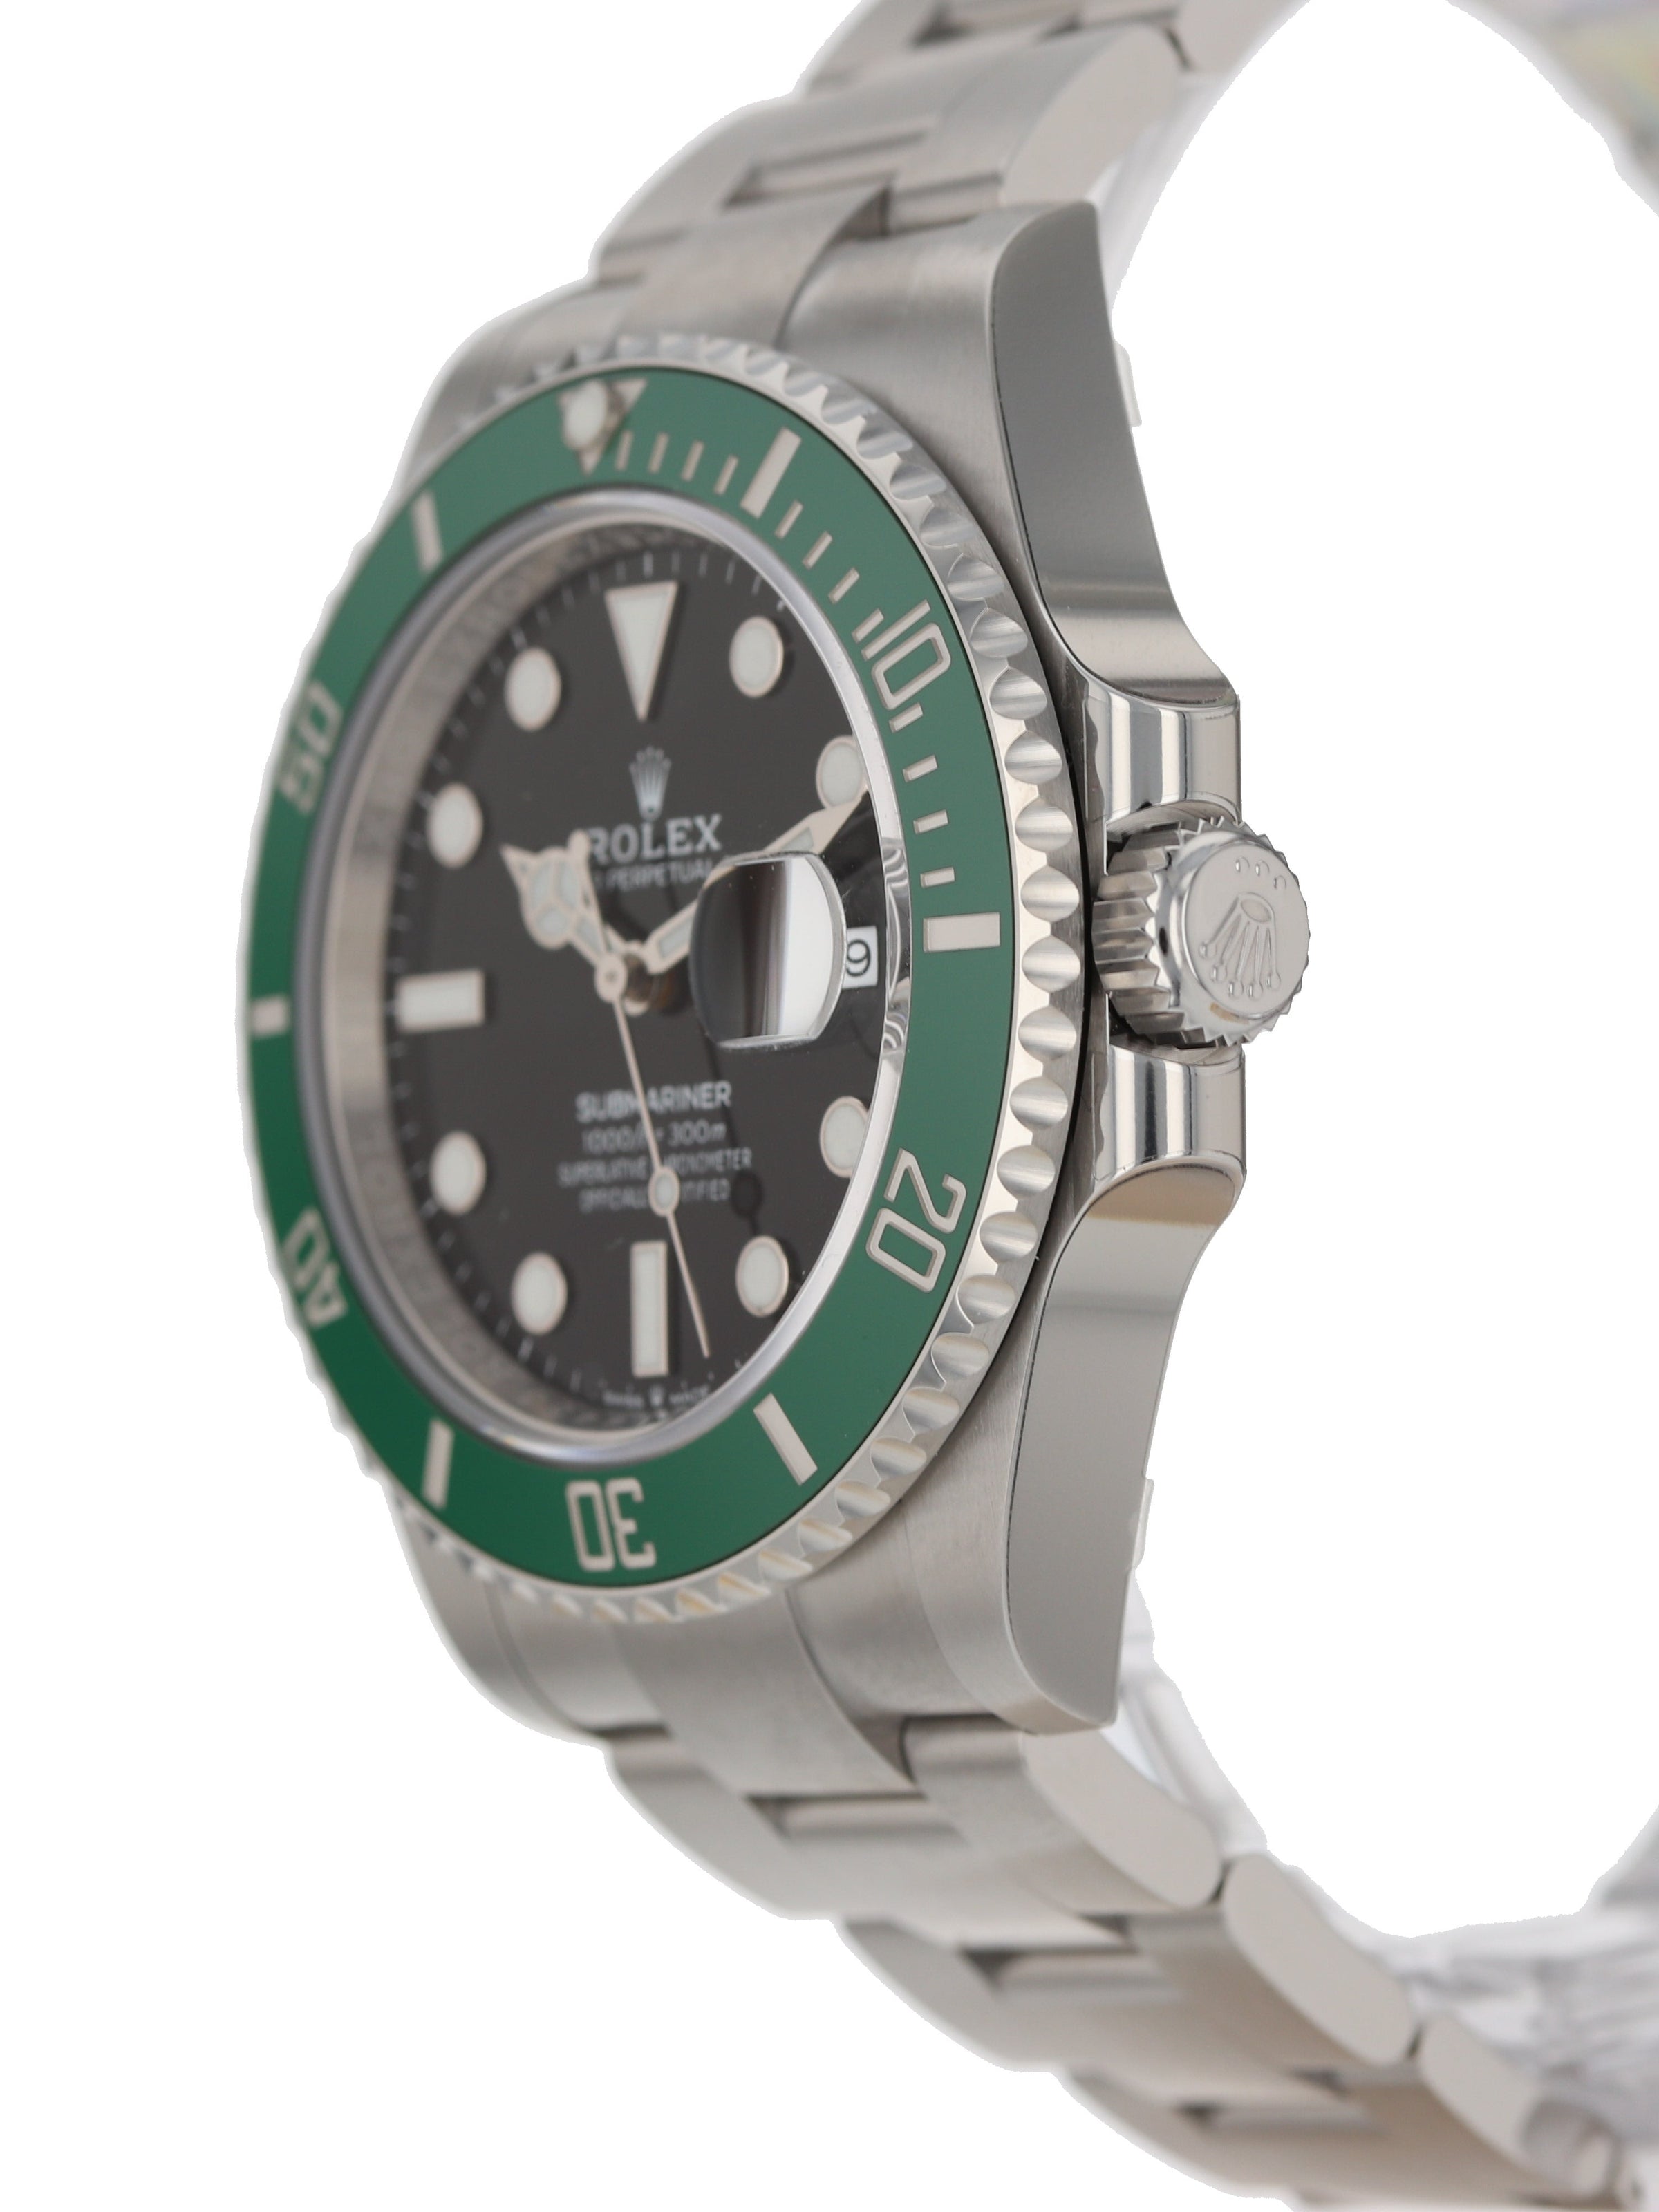 Rolex Submariner 126610LV 'Starbucks' MK2 – Belmont Watches